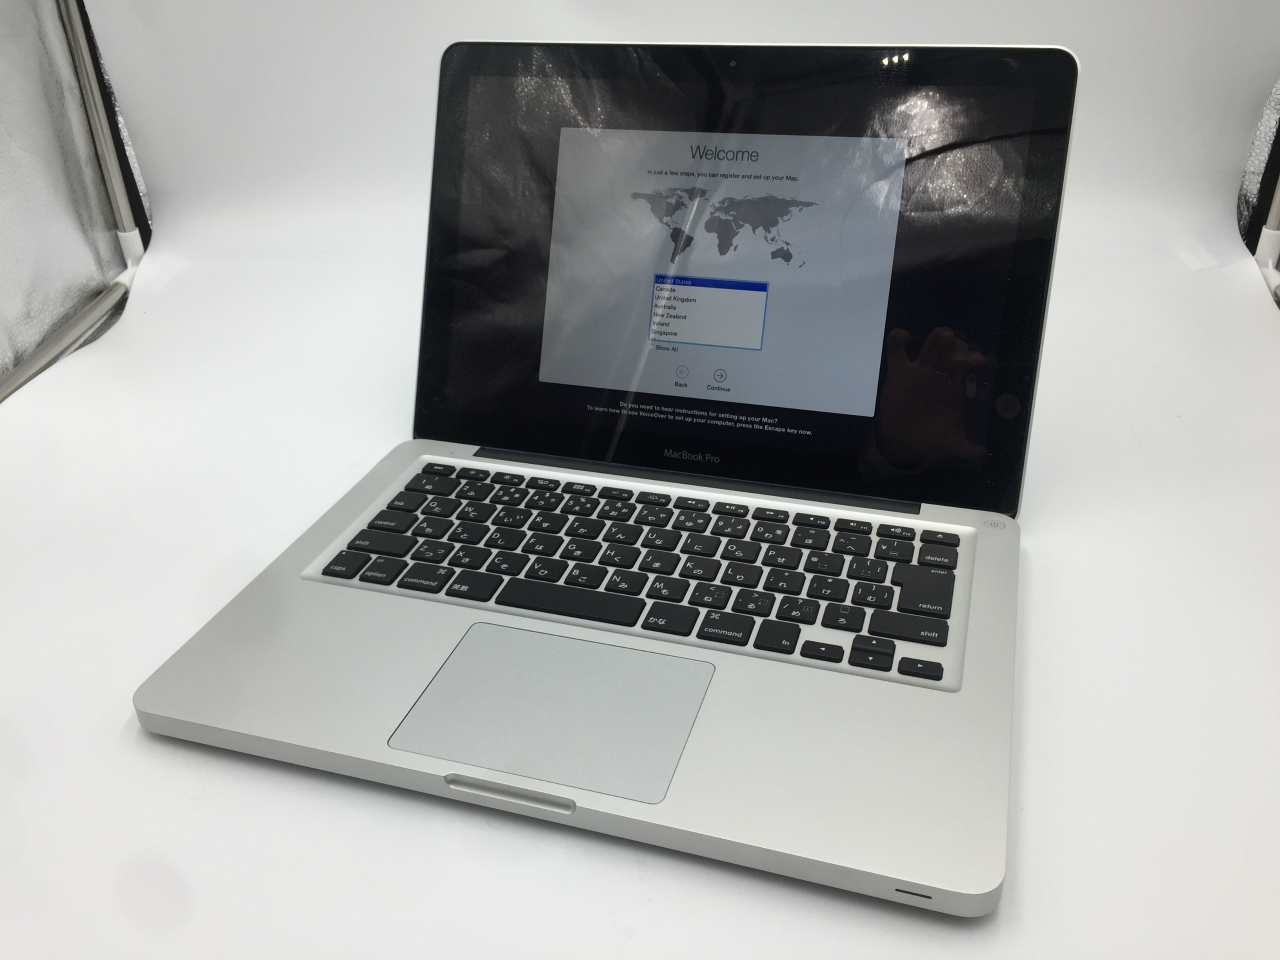 Apple MacBook Pro A1278 CPU:Intel Core i5 2.5GHz / メモリ:4GB 